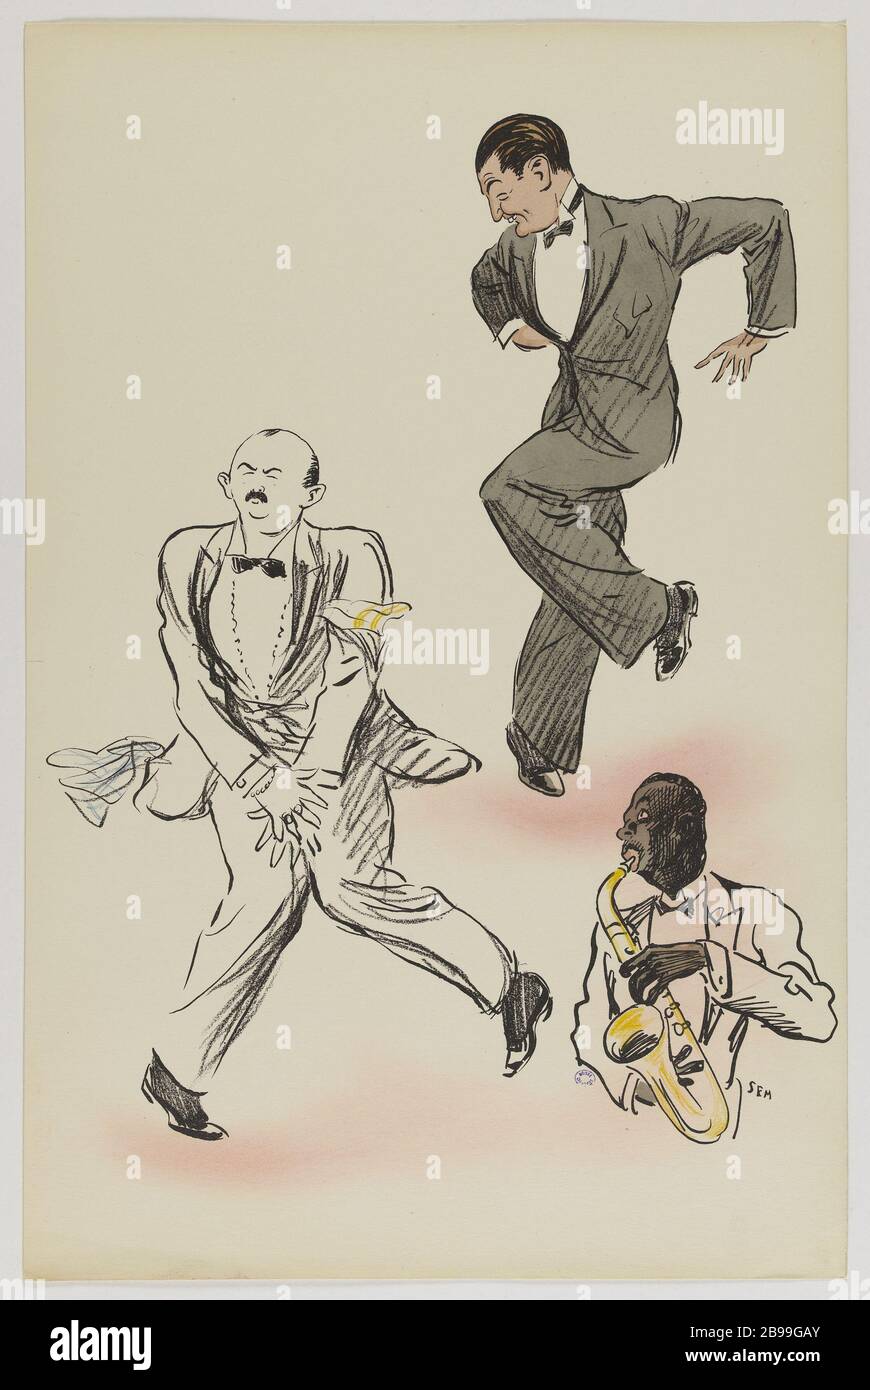 FOND BLANC ALBUM PAR SEM (PL 38) SEM (1863-1934). 'Album White Bas par SEM (pl 38)'. Lithographie en couleur. Paris, musée Carnavalet. Banque D'Images